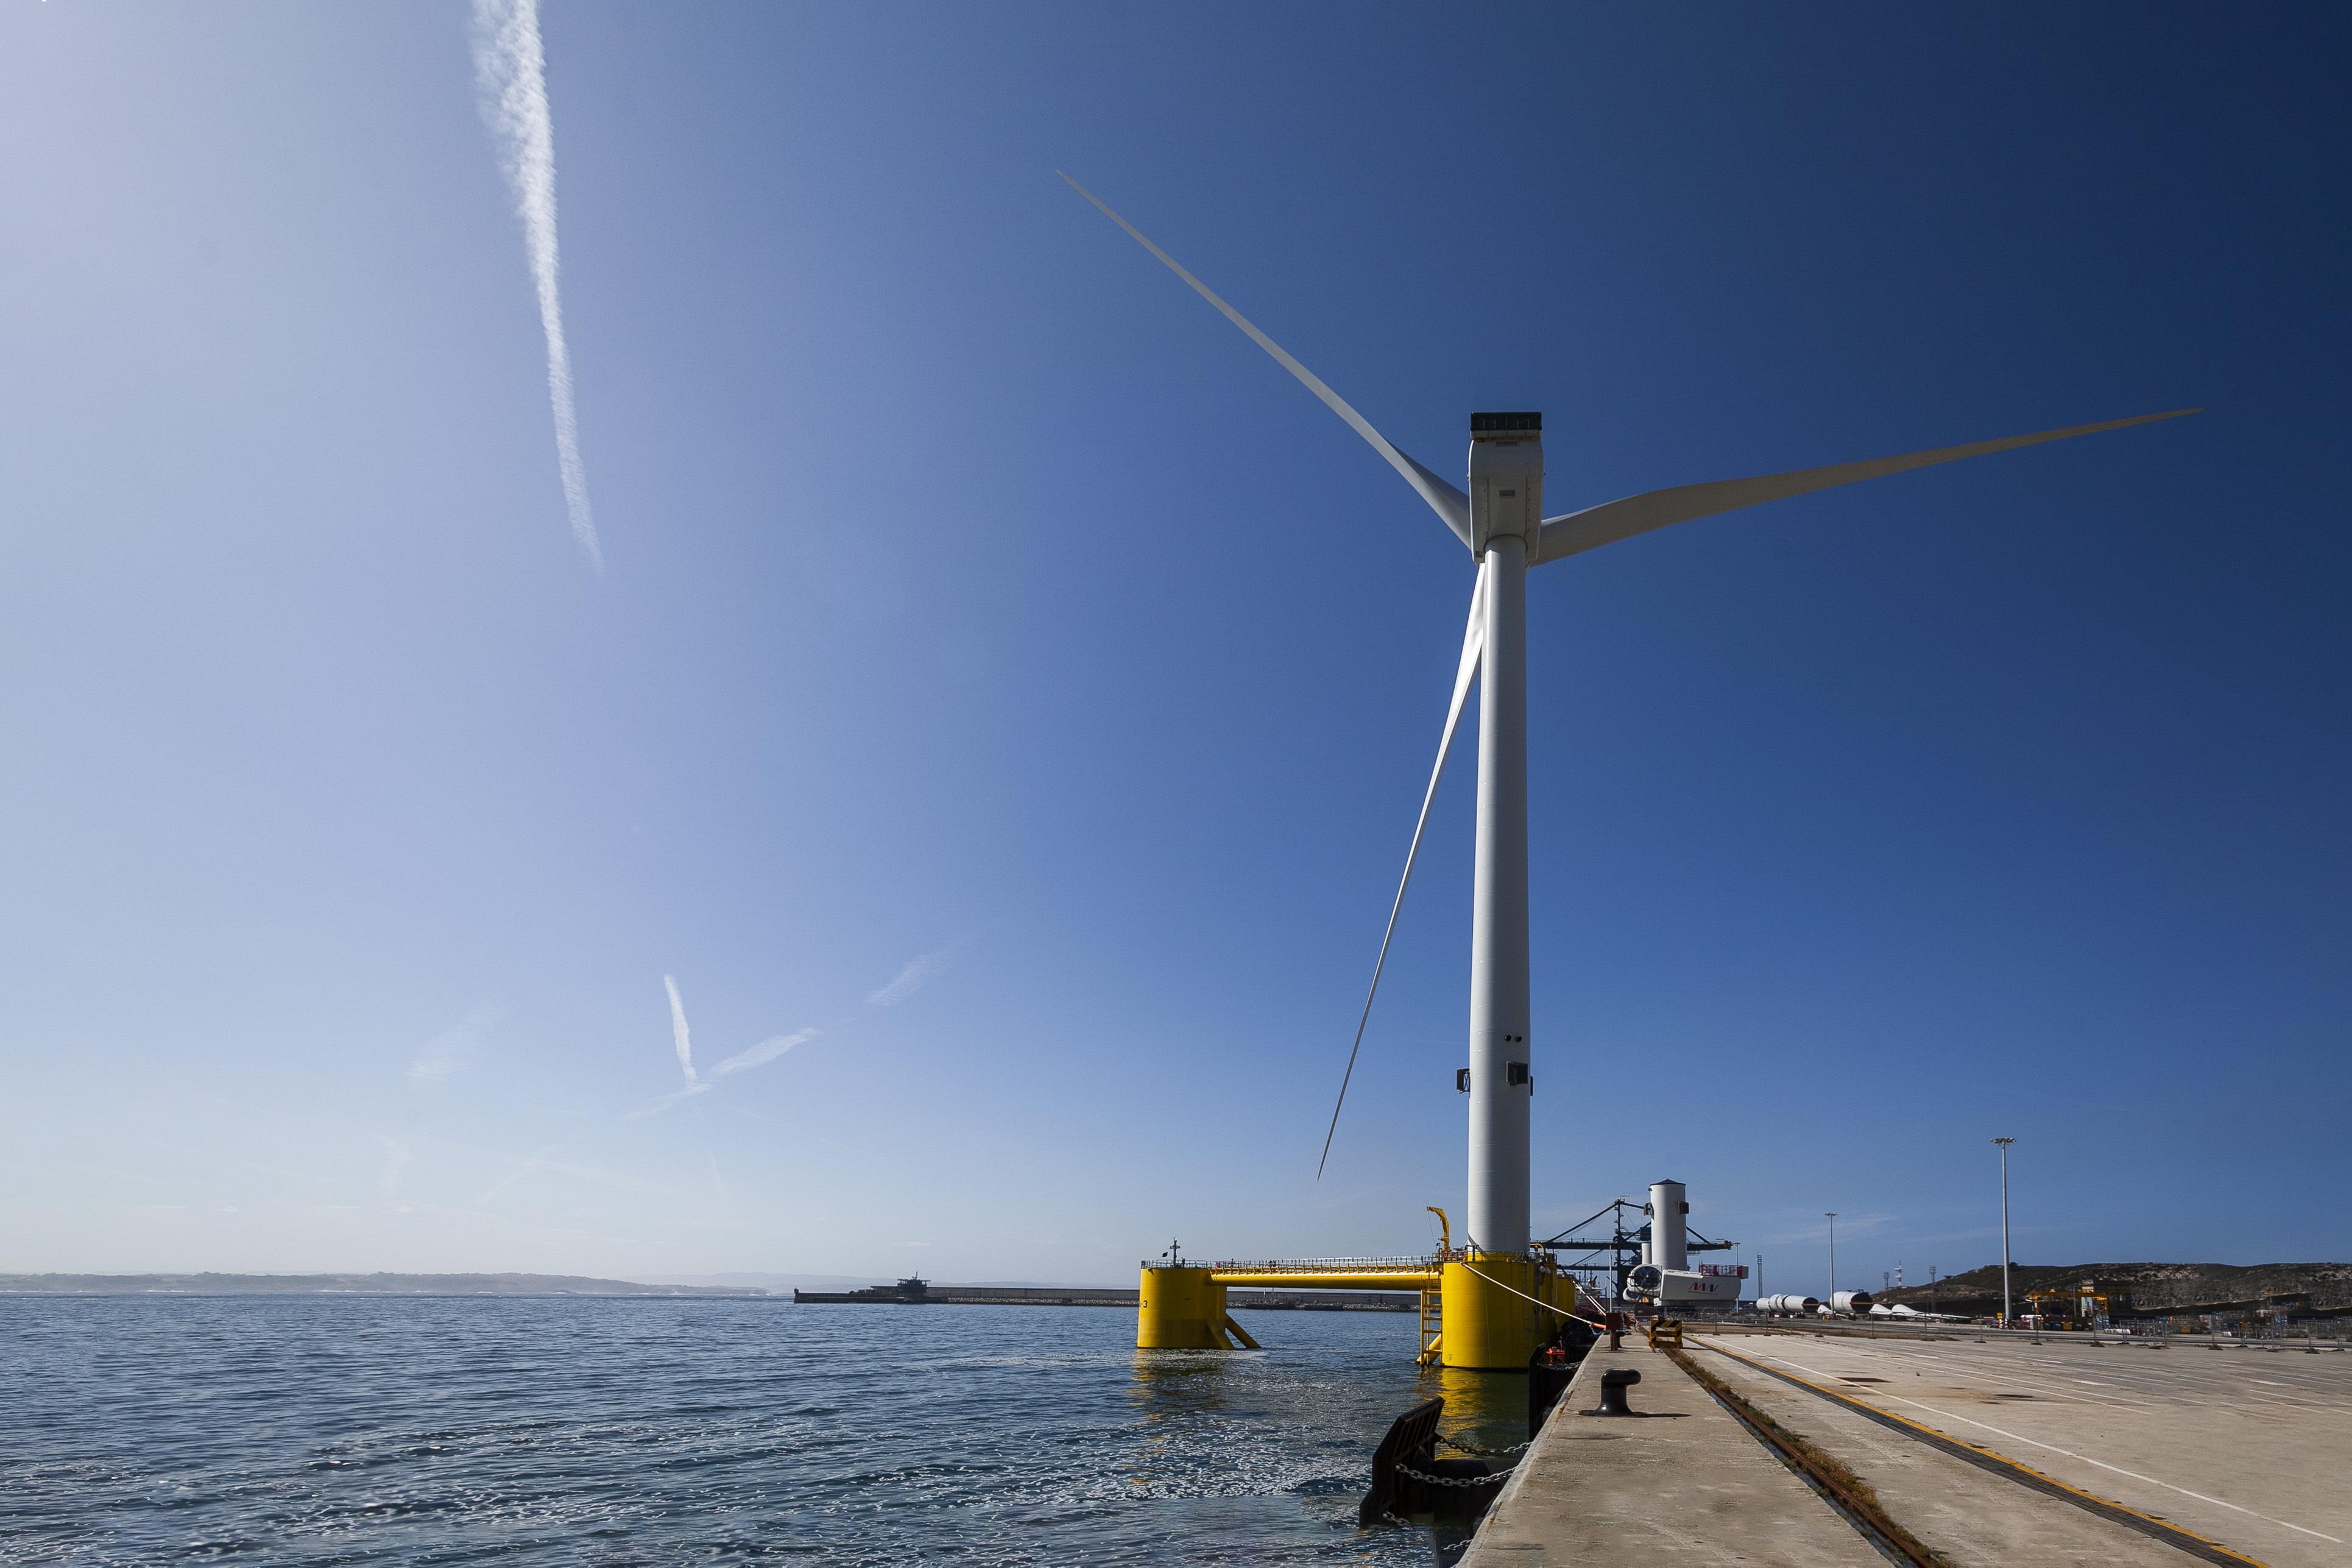 Proyecto Windfloat Atlantic participado por Repsol en el puerto de Ferrol